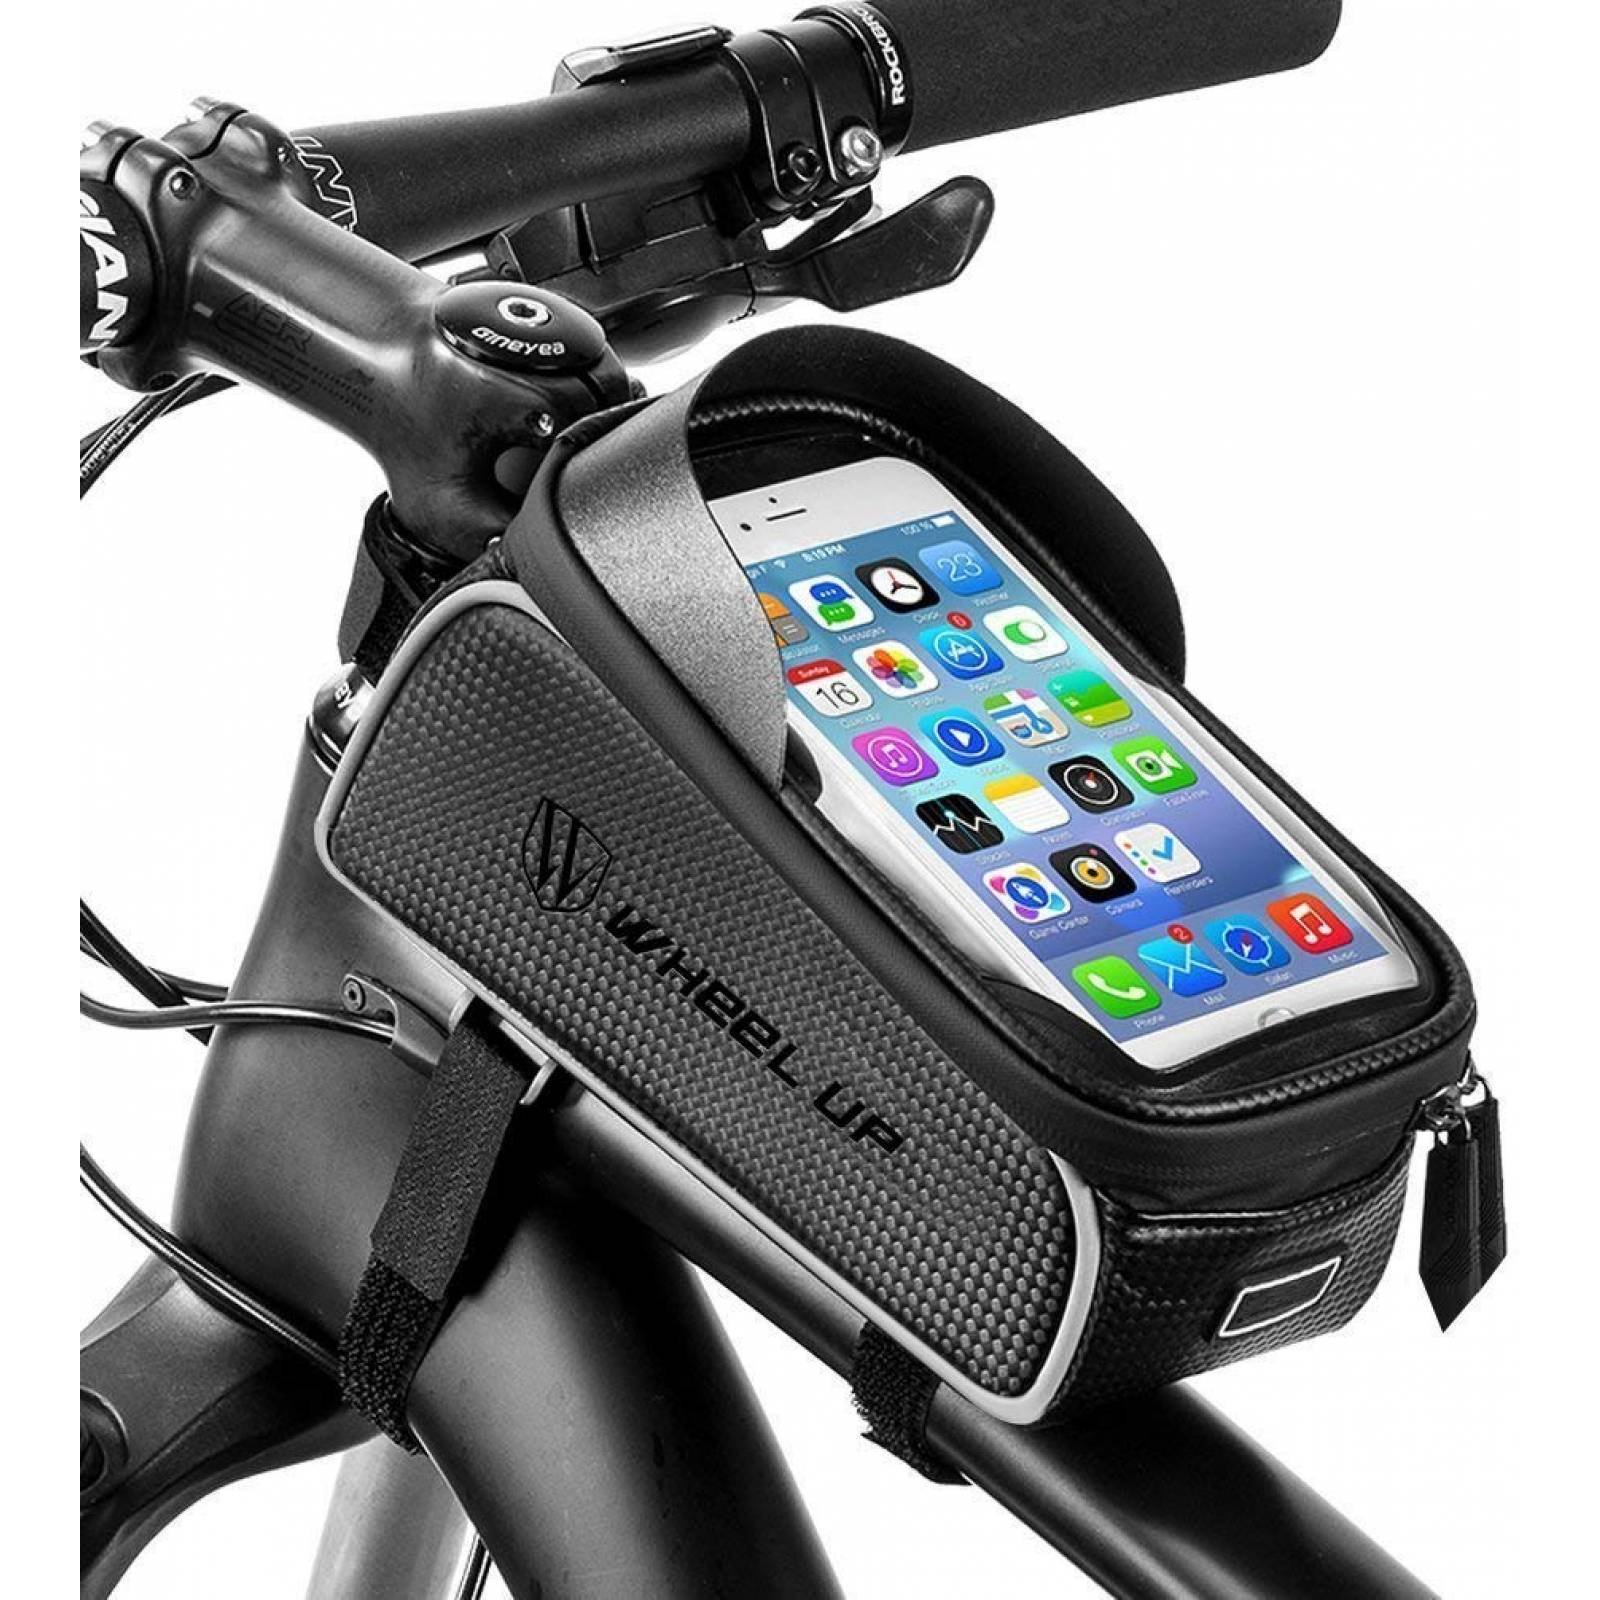 RockBros - Bolsa de Ciclismo con Marco Frontal para Bicicleta, Impermeable, para teléfono Celular, visualización táctil, Compatible con teléfonos de Menos DE 6,0 Pulgadas